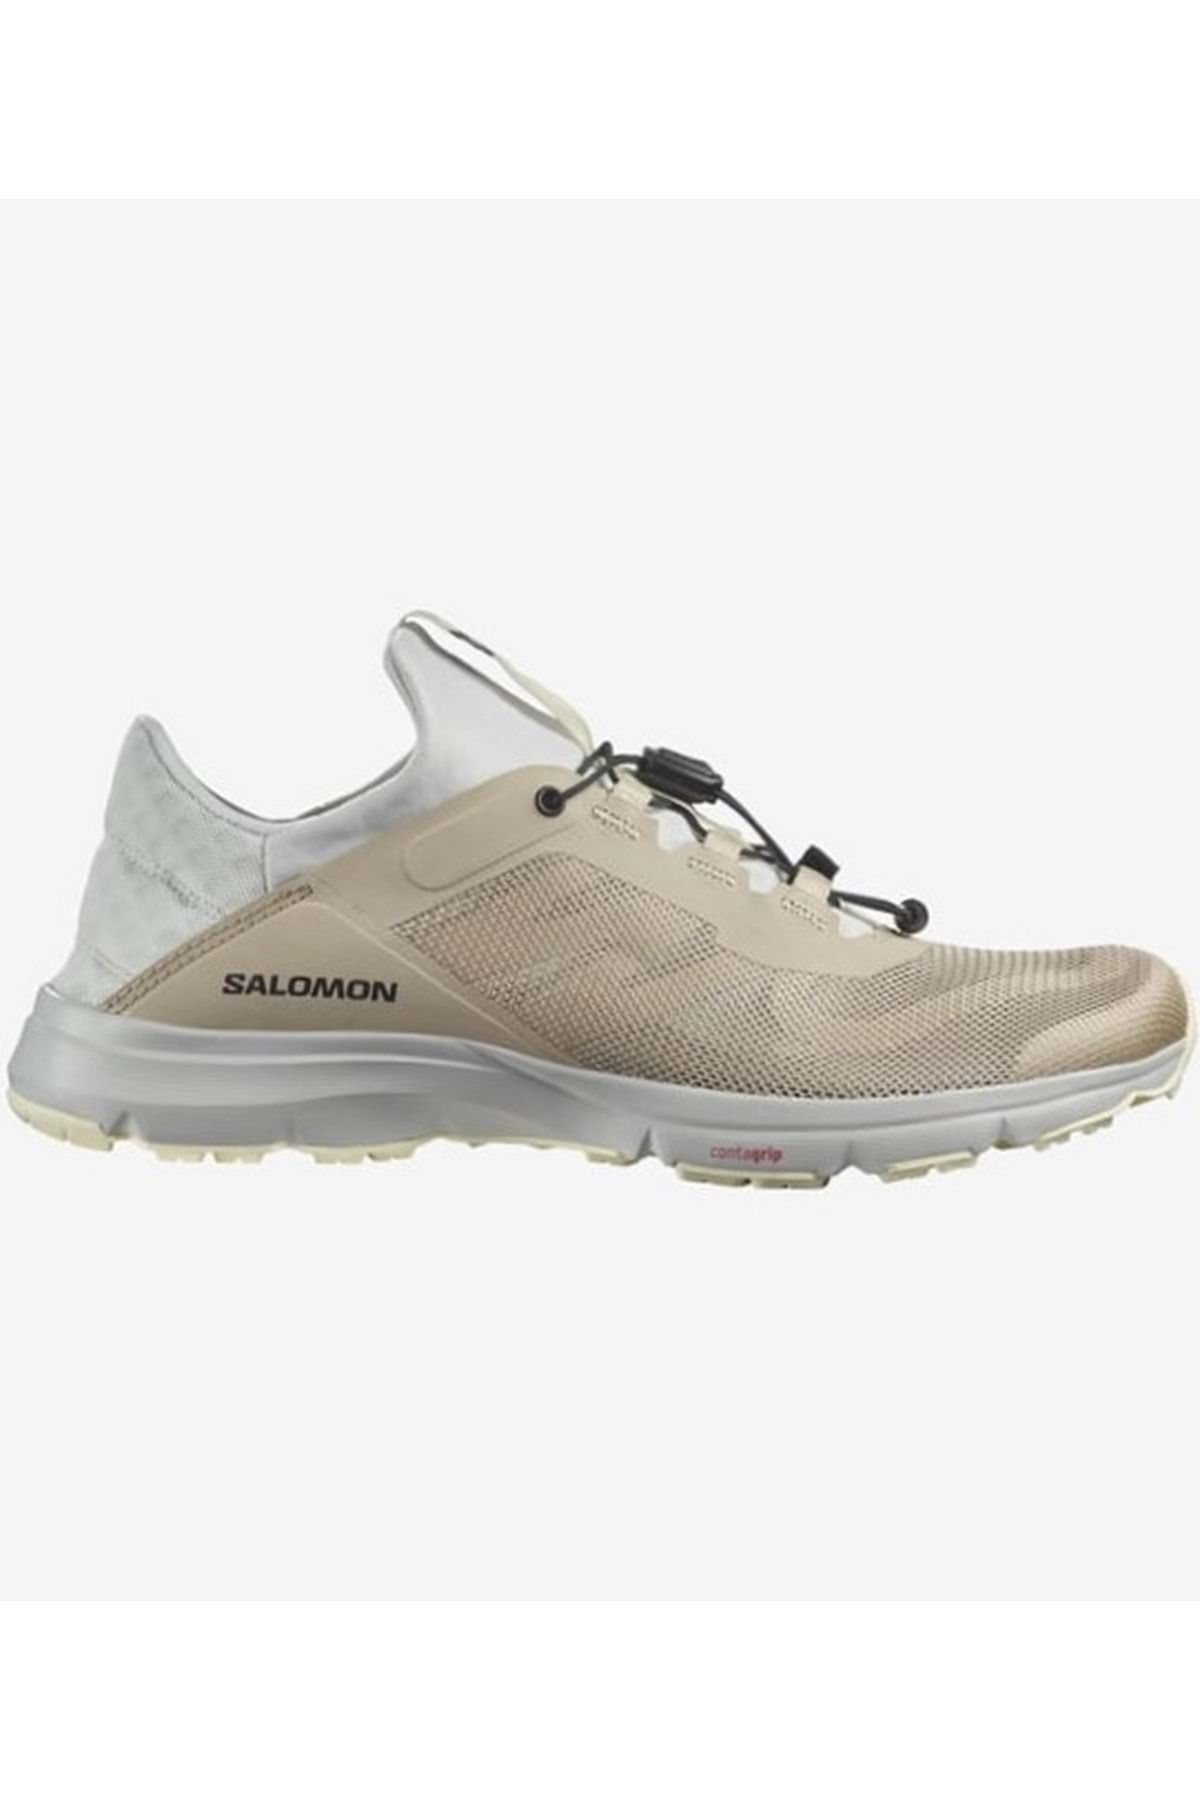 Salomon Amphib Bold 2 Su Ayakkabısı Unisex Spor Ayakkabı Bej